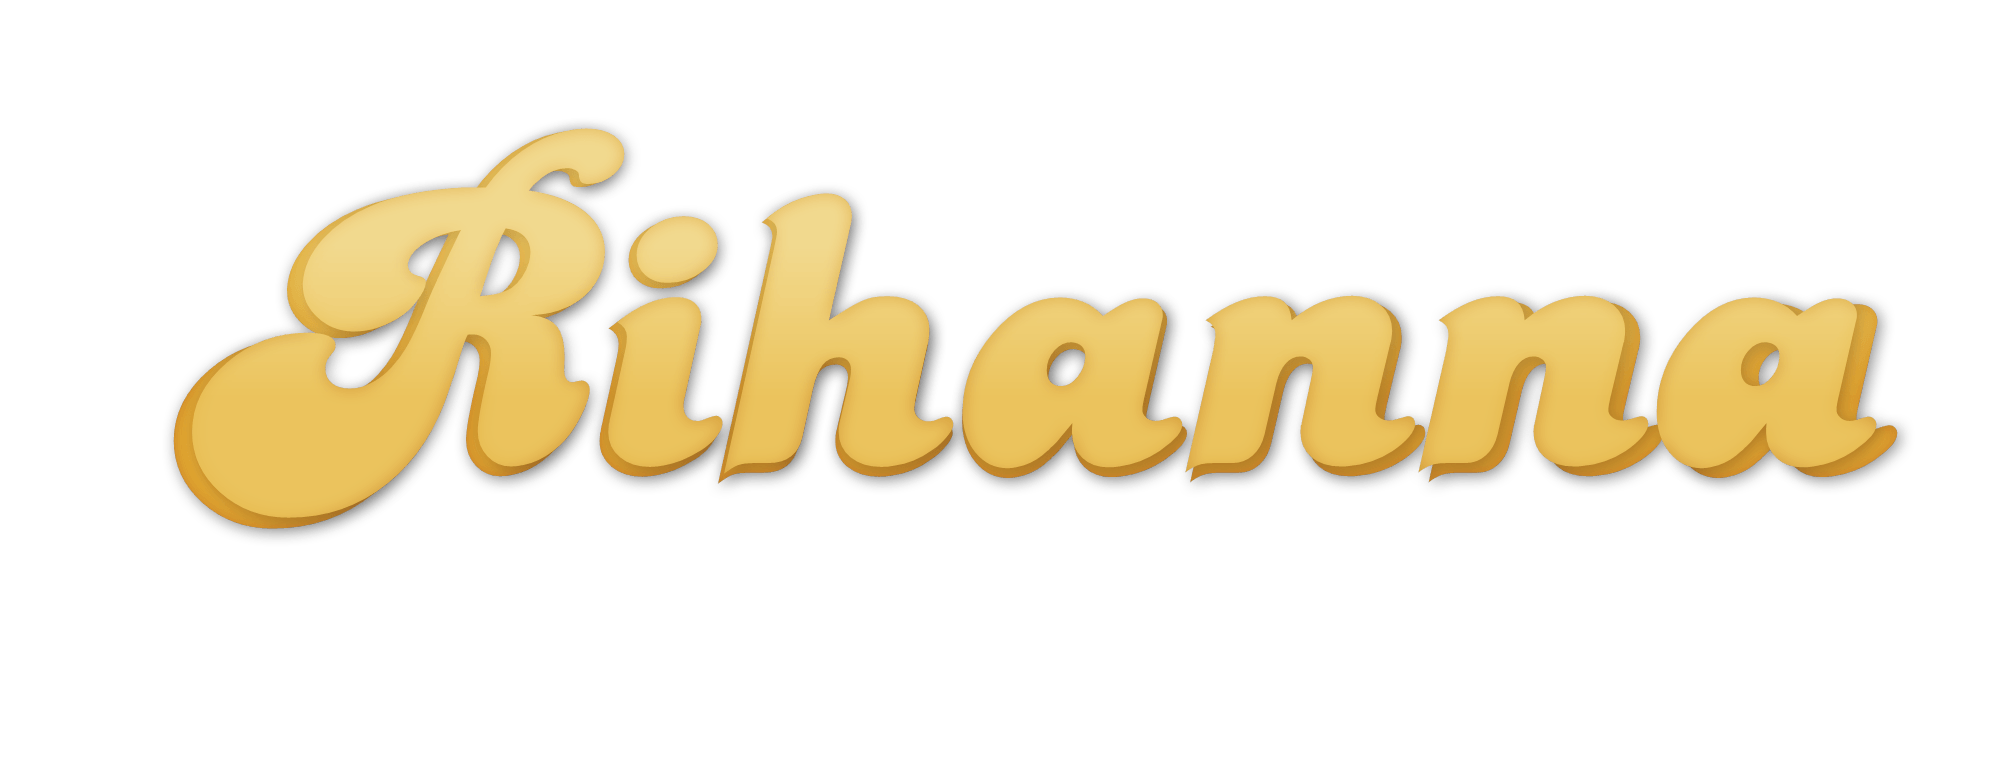 Rihanna Logo - Rihanna | Logopedia | FANDOM powered by Wikia